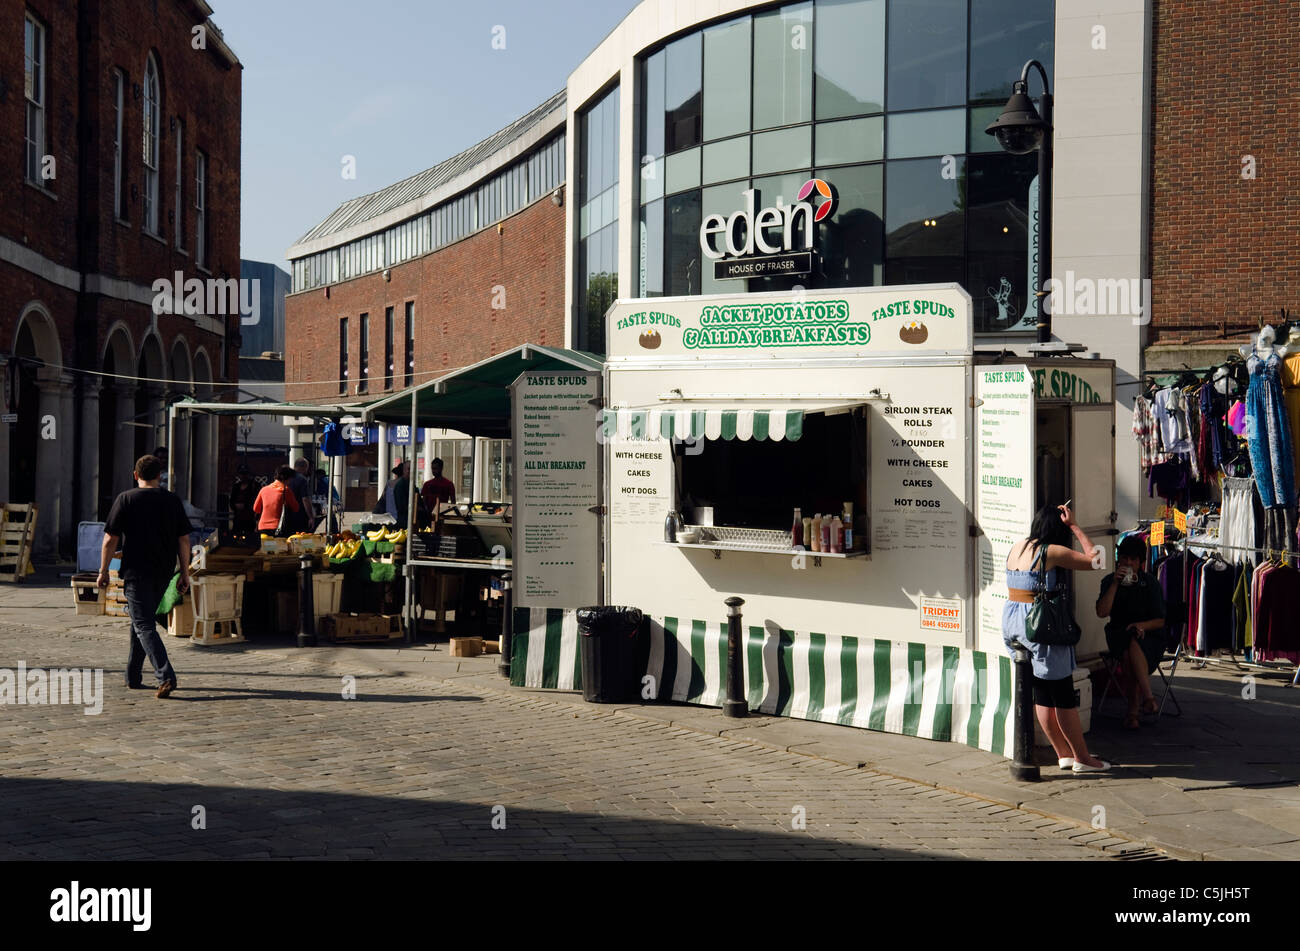 Street scene, fast food kiosk, Eden shopping centre High Wycombe Bucks UK Stock Photo